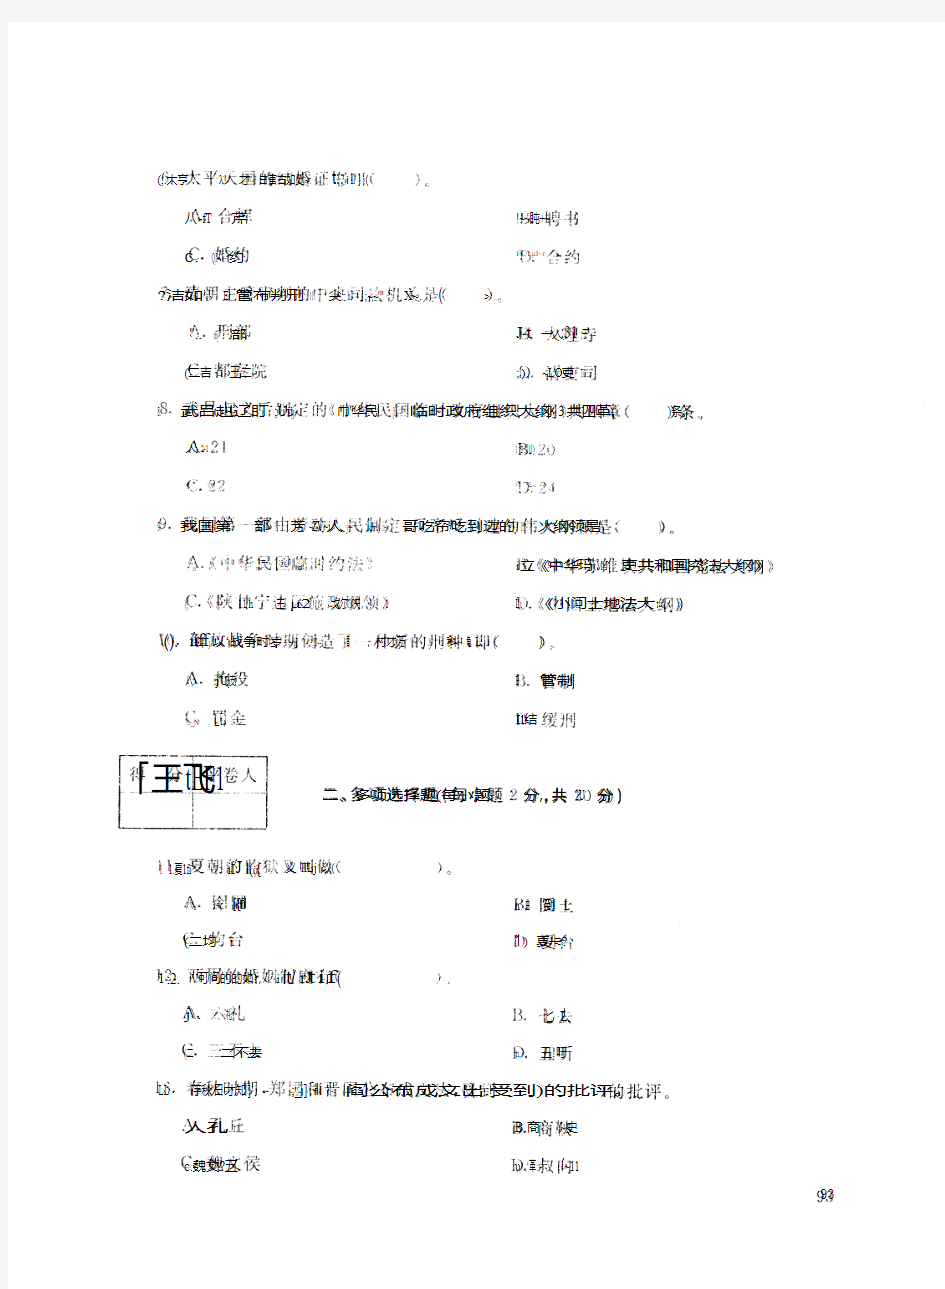 2017年1月【试卷号1001】《中国法制史》电大试题答案(最新).pdf